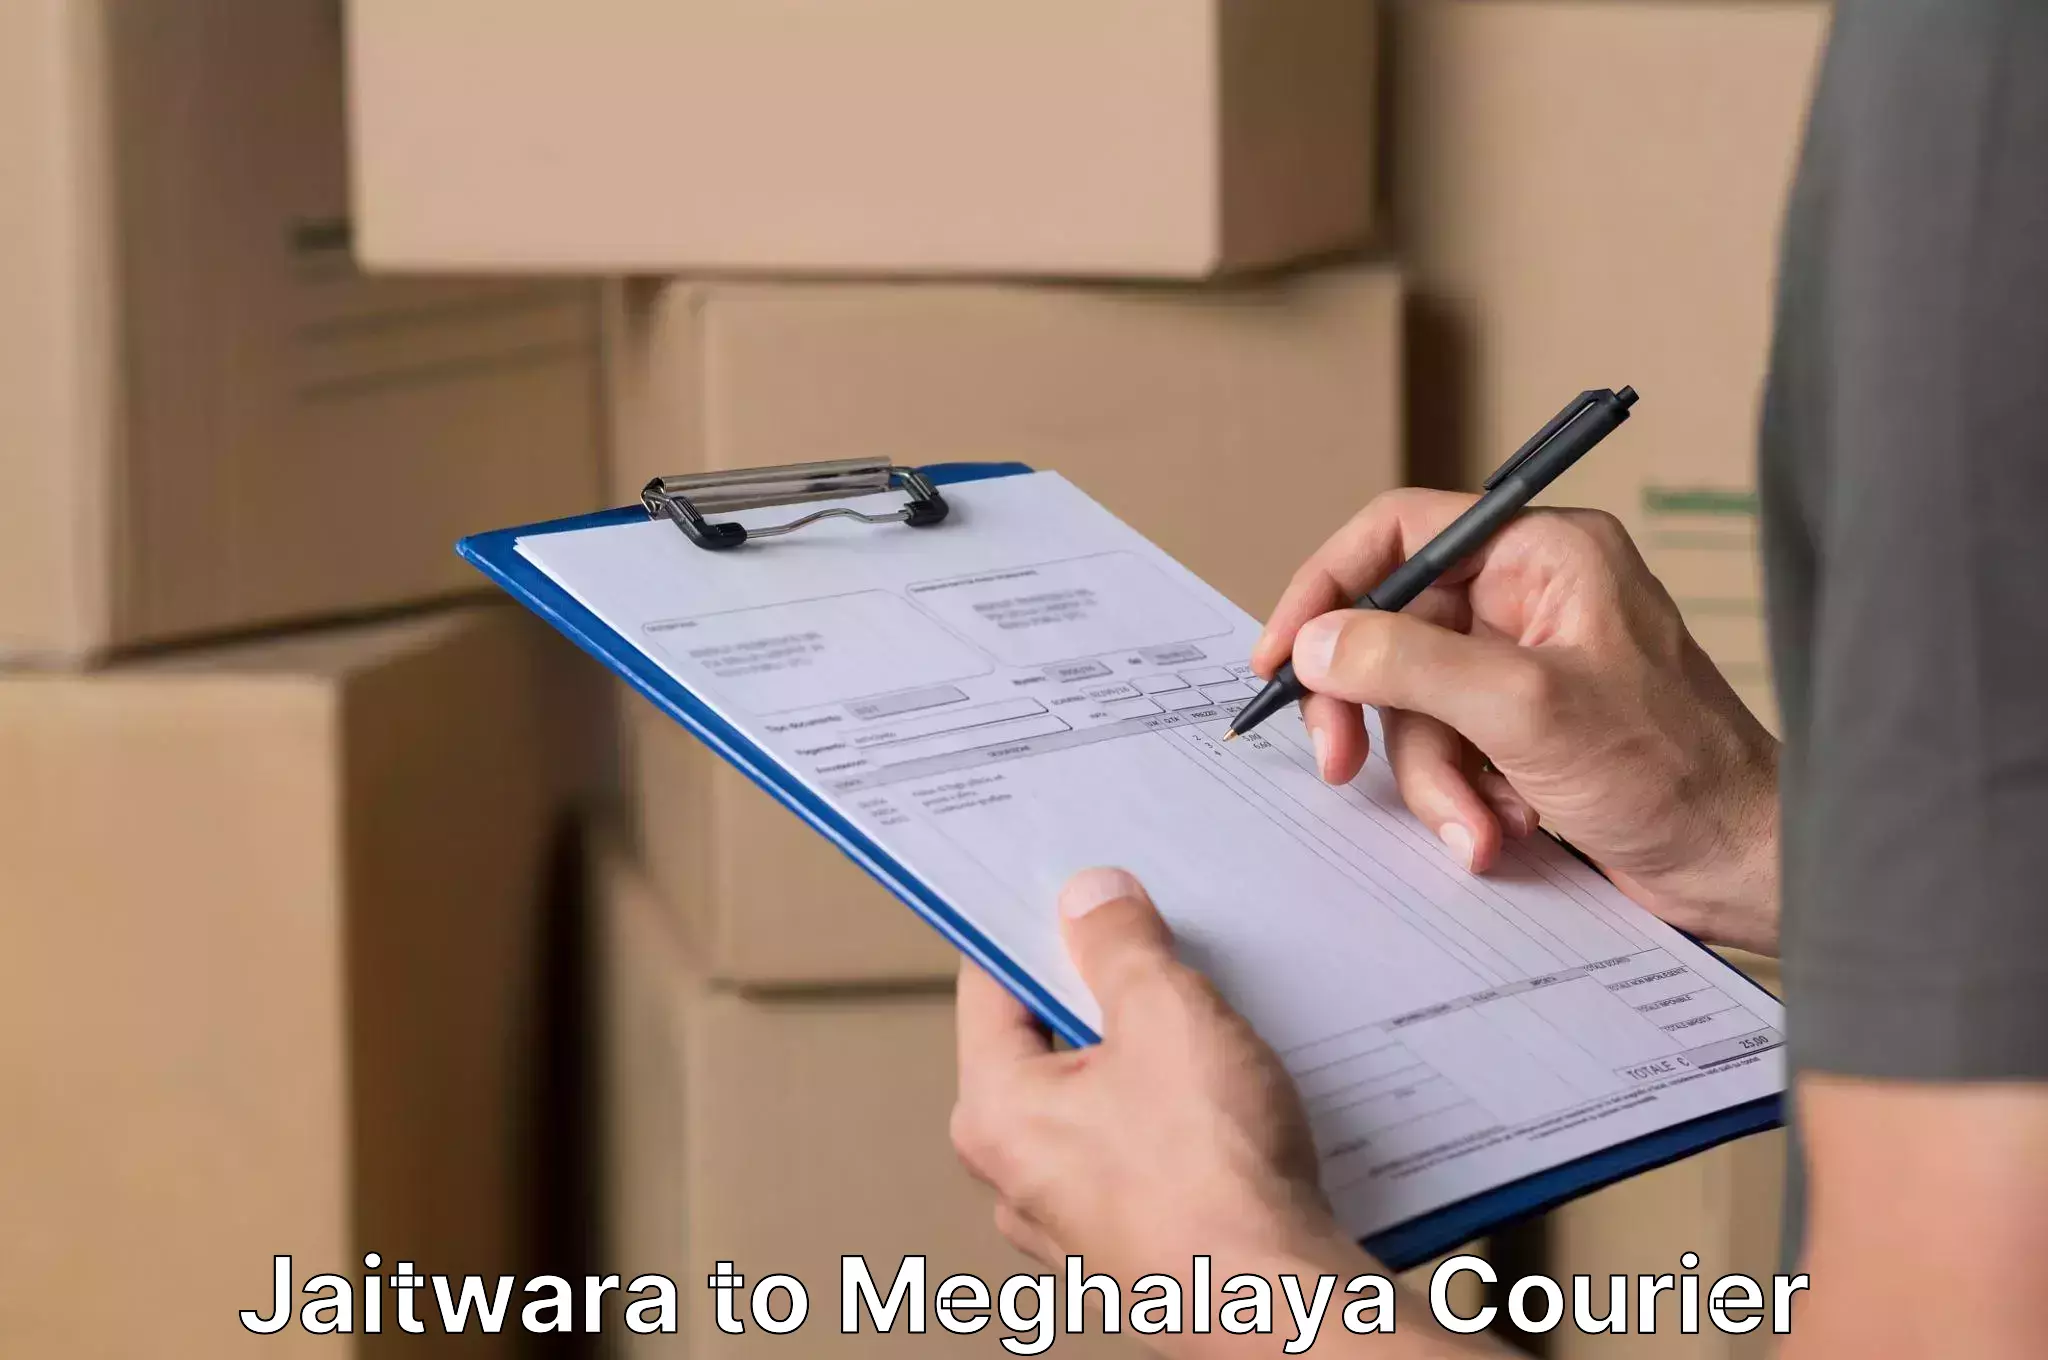 Furniture transport professionals Jaitwara to Umsaw